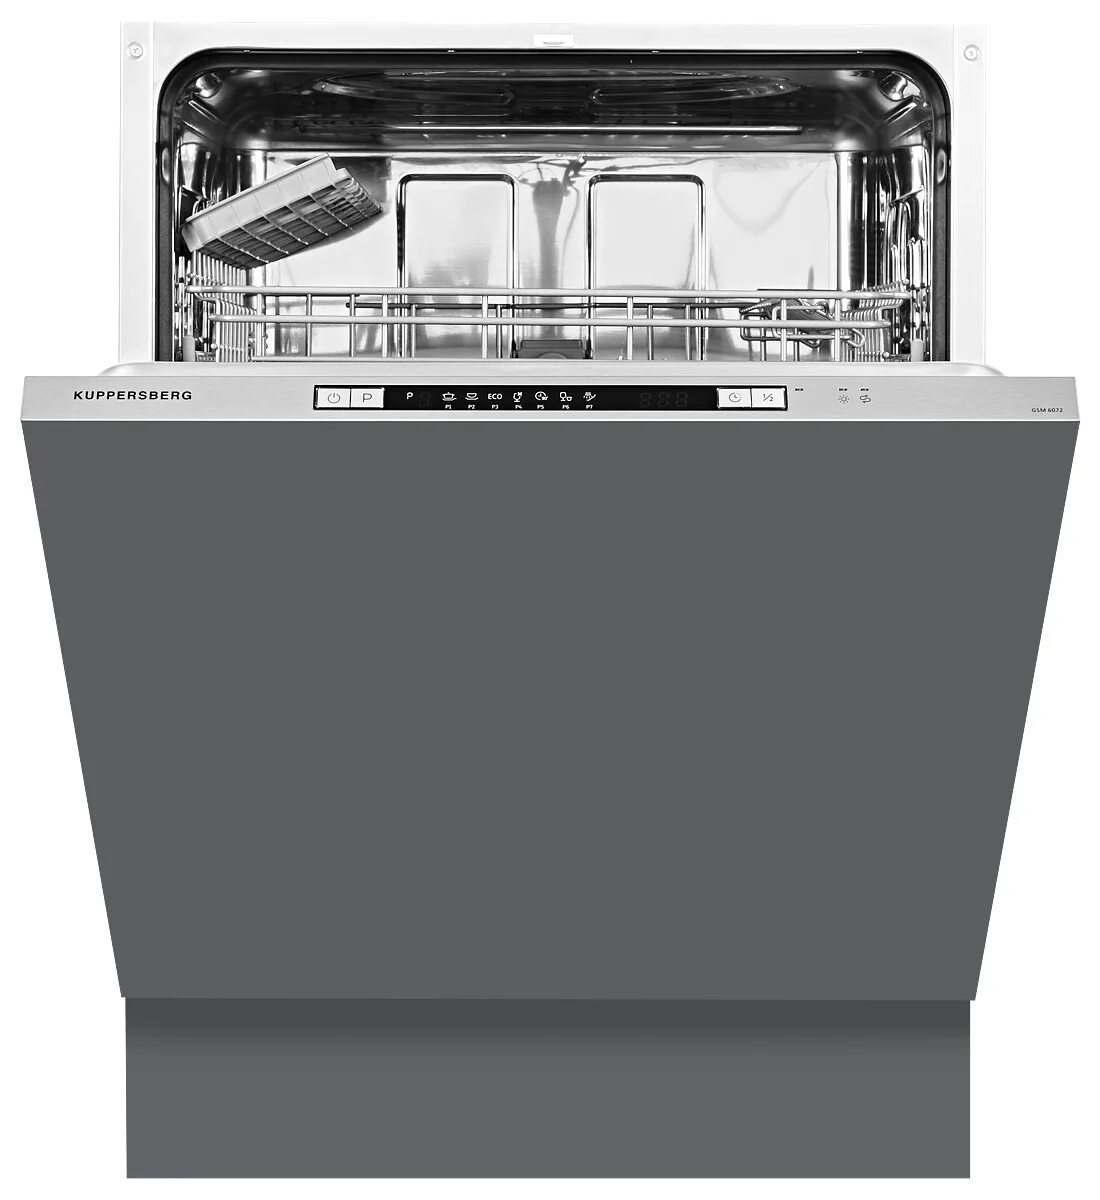 Посудомоечная машина gsm 6074. Встраиваемая посудомоечная машина Kuppersberg GSM 6072. Посудомоечная машина Kuppersberg GS 6005. Встраиваемая посудомоечная машина Kuppersberg GSM 6073. Куперсберг встраиваемые посудомоечные машины 60 см.